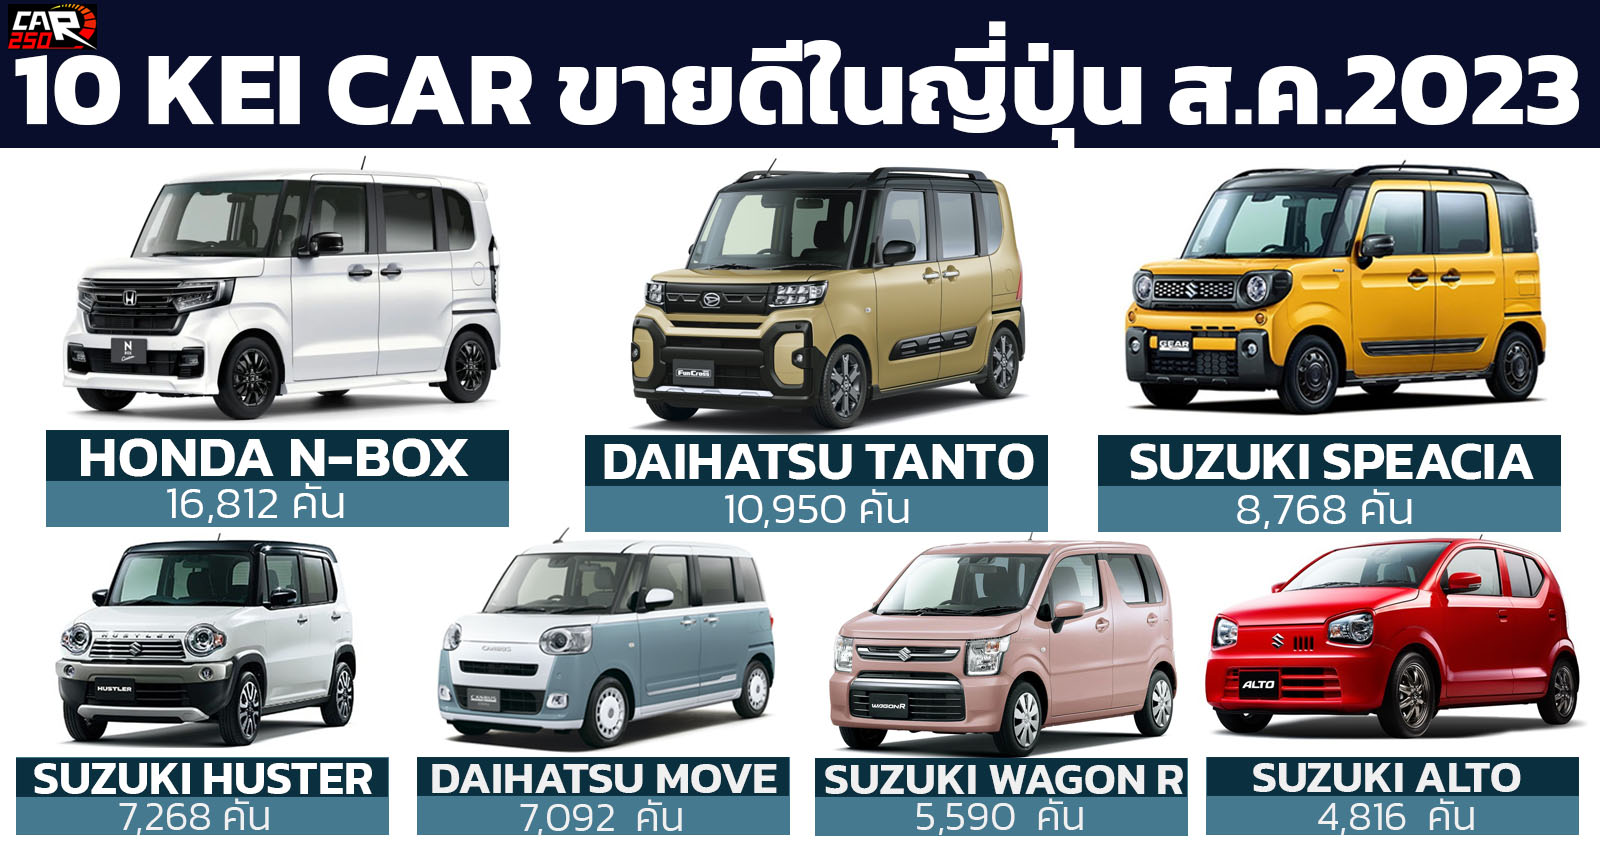 10 รถยนต์ Kei Car ขนาดเล็ก ขายดีในประเทศญี่ปุ่น สิงหาคม 2023